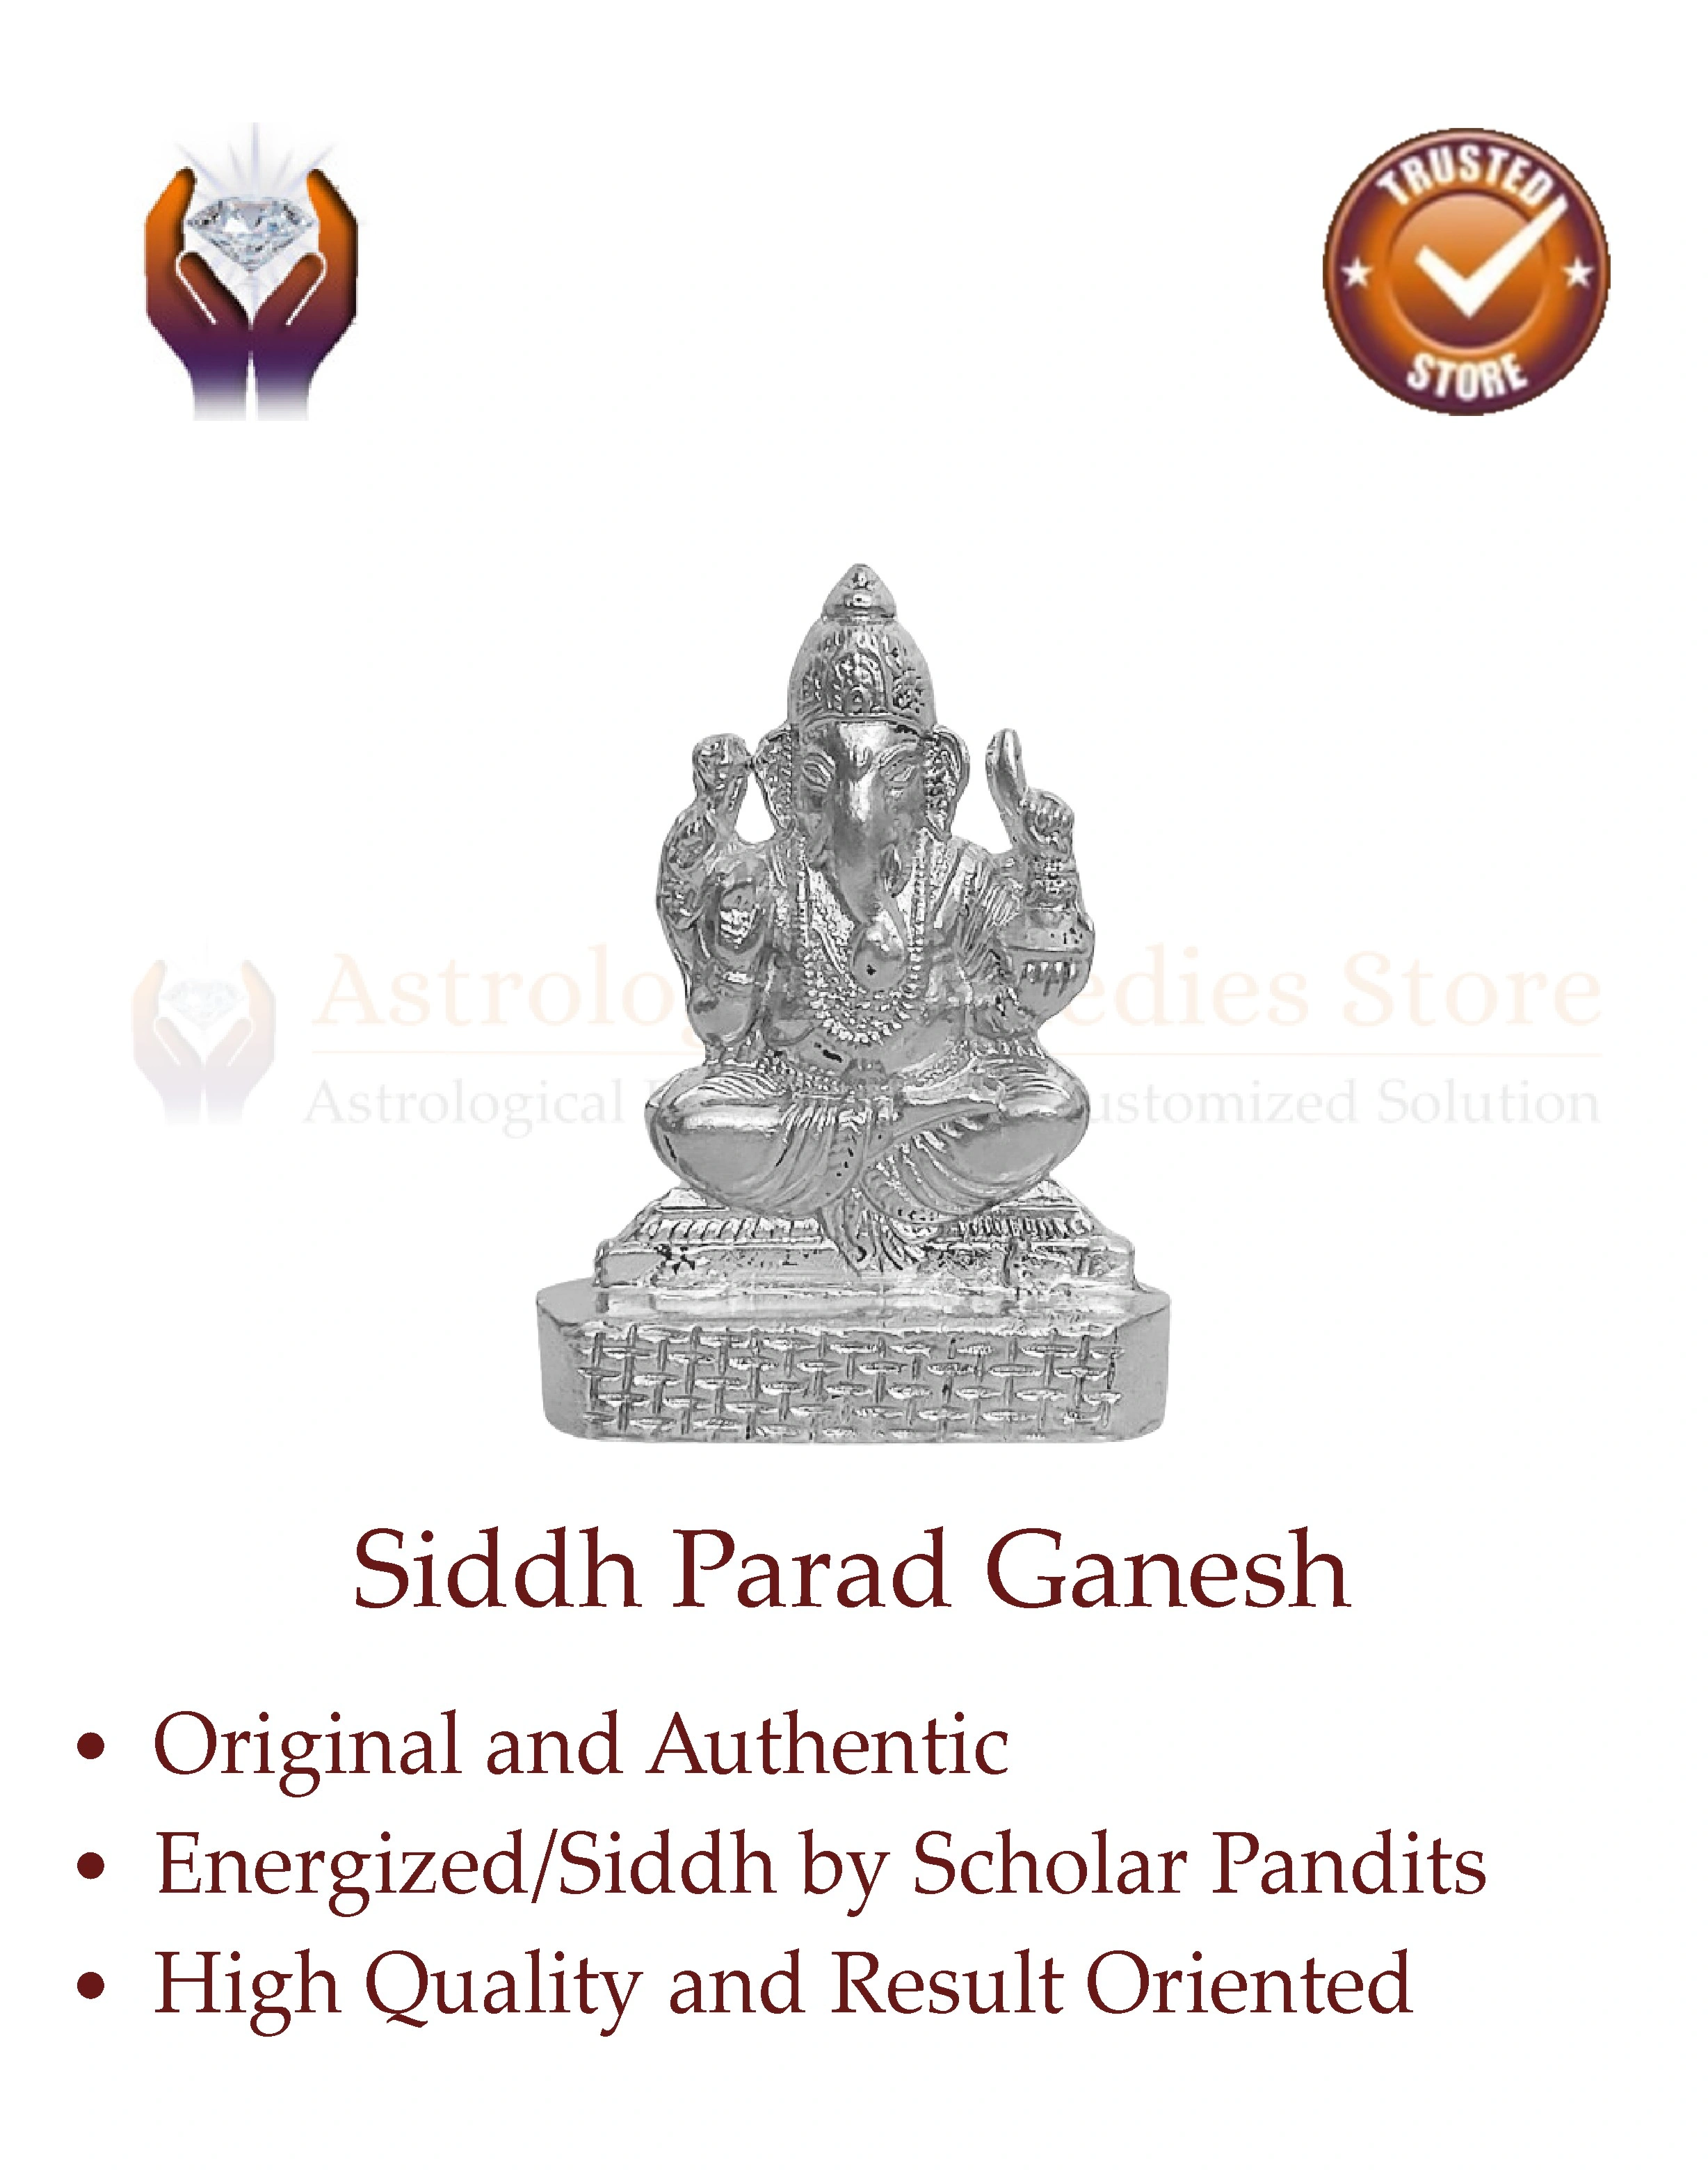 Parad Ganesh Benefits